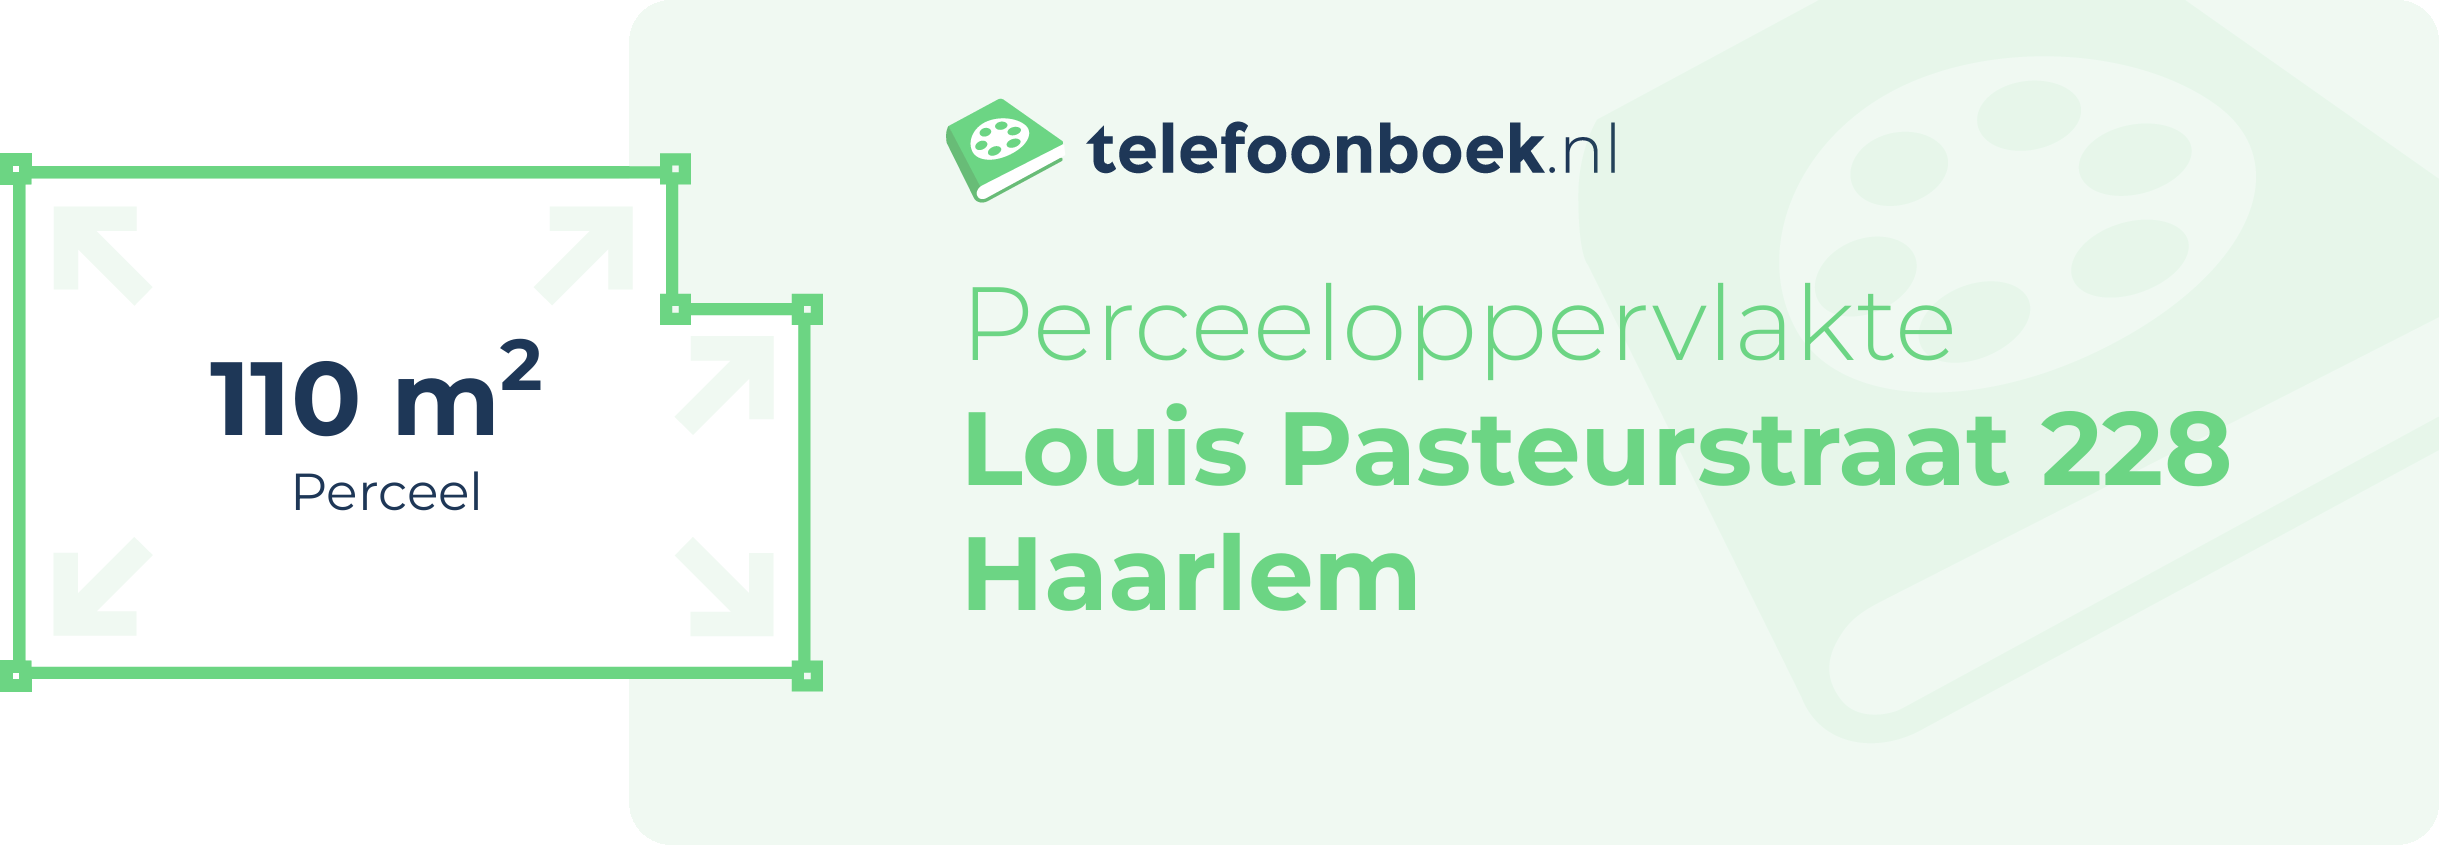 Perceeloppervlakte Louis Pasteurstraat 228 Haarlem